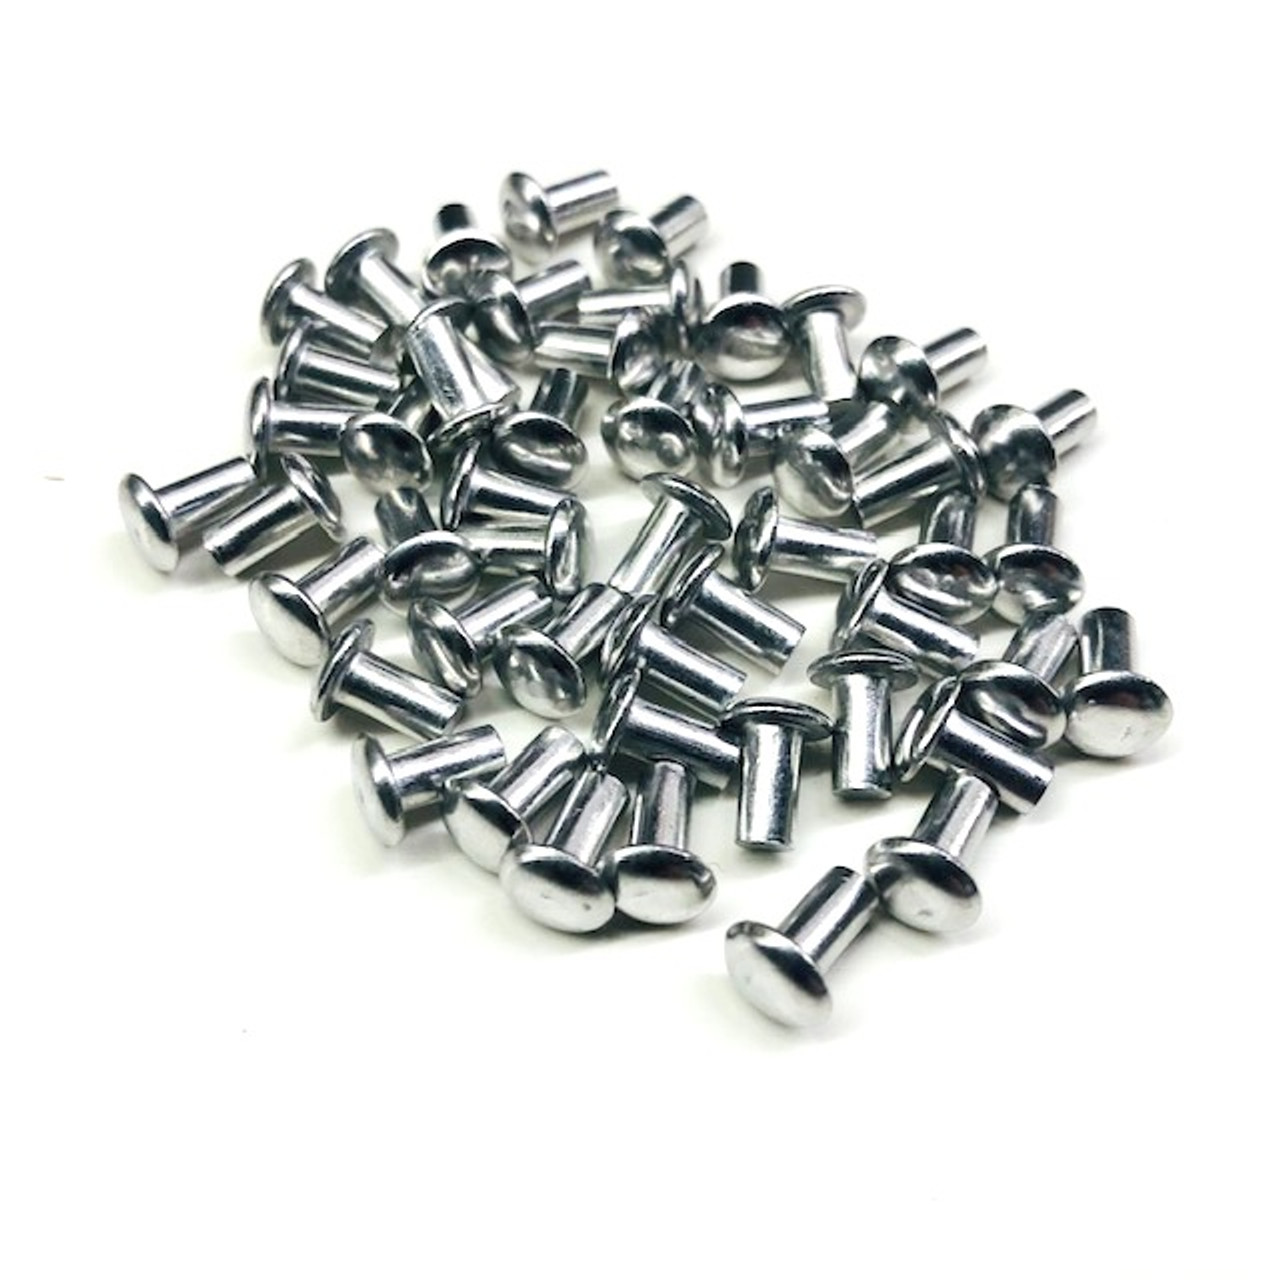 1/8 x 1/4 solid aluminum smash rivets 50pk